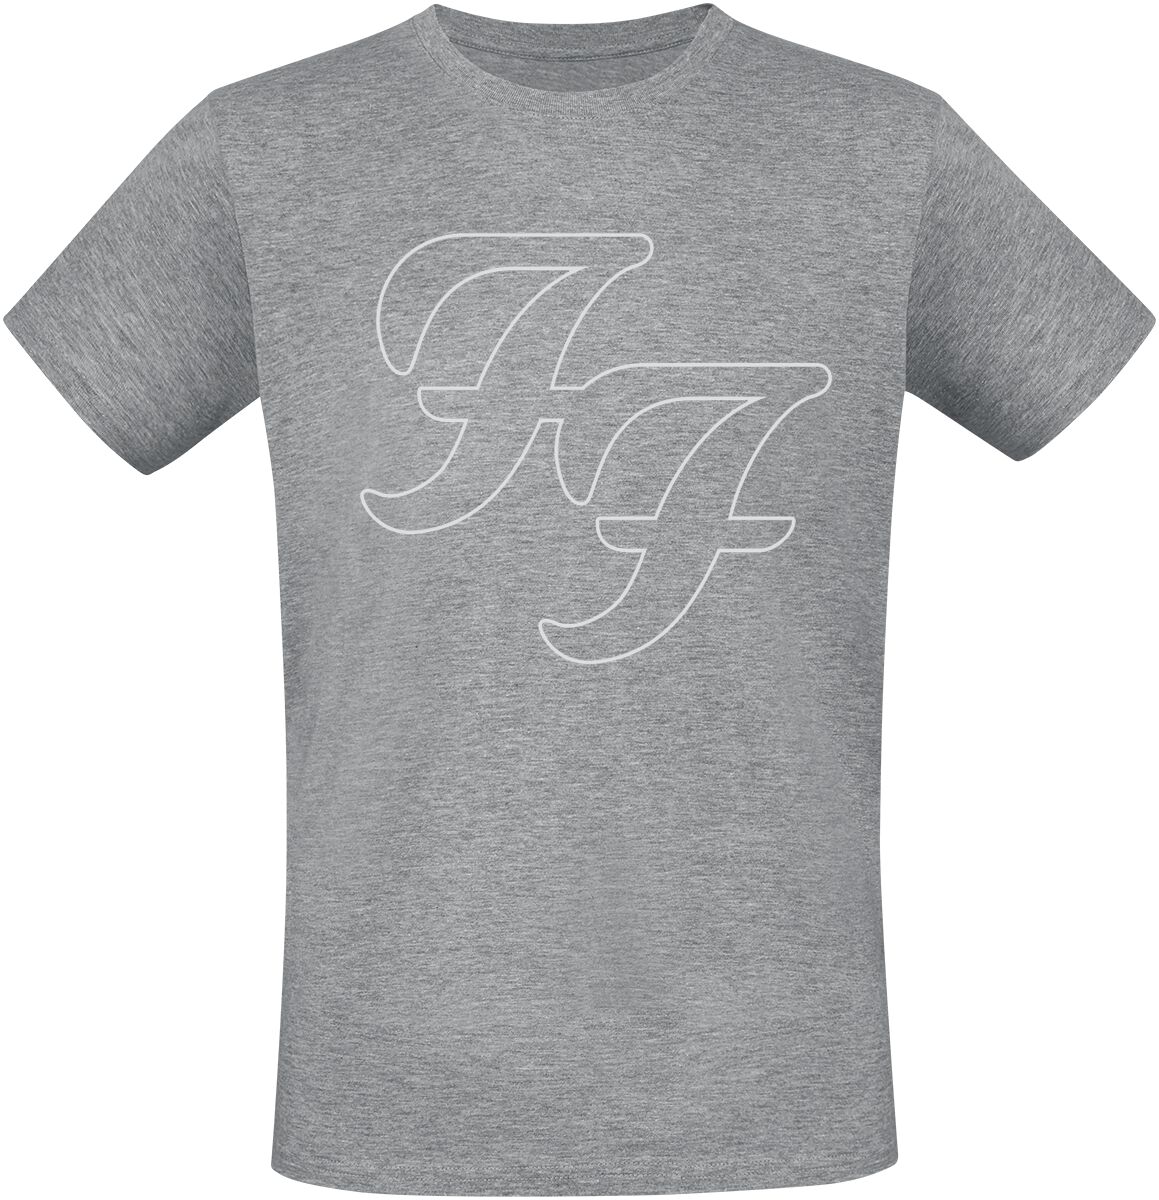 Foo Fighters T-Shirt - But Here We Are - S bis 3XL - für Männer - Größe S - grau meliert  - Lizenziertes Merchandise!